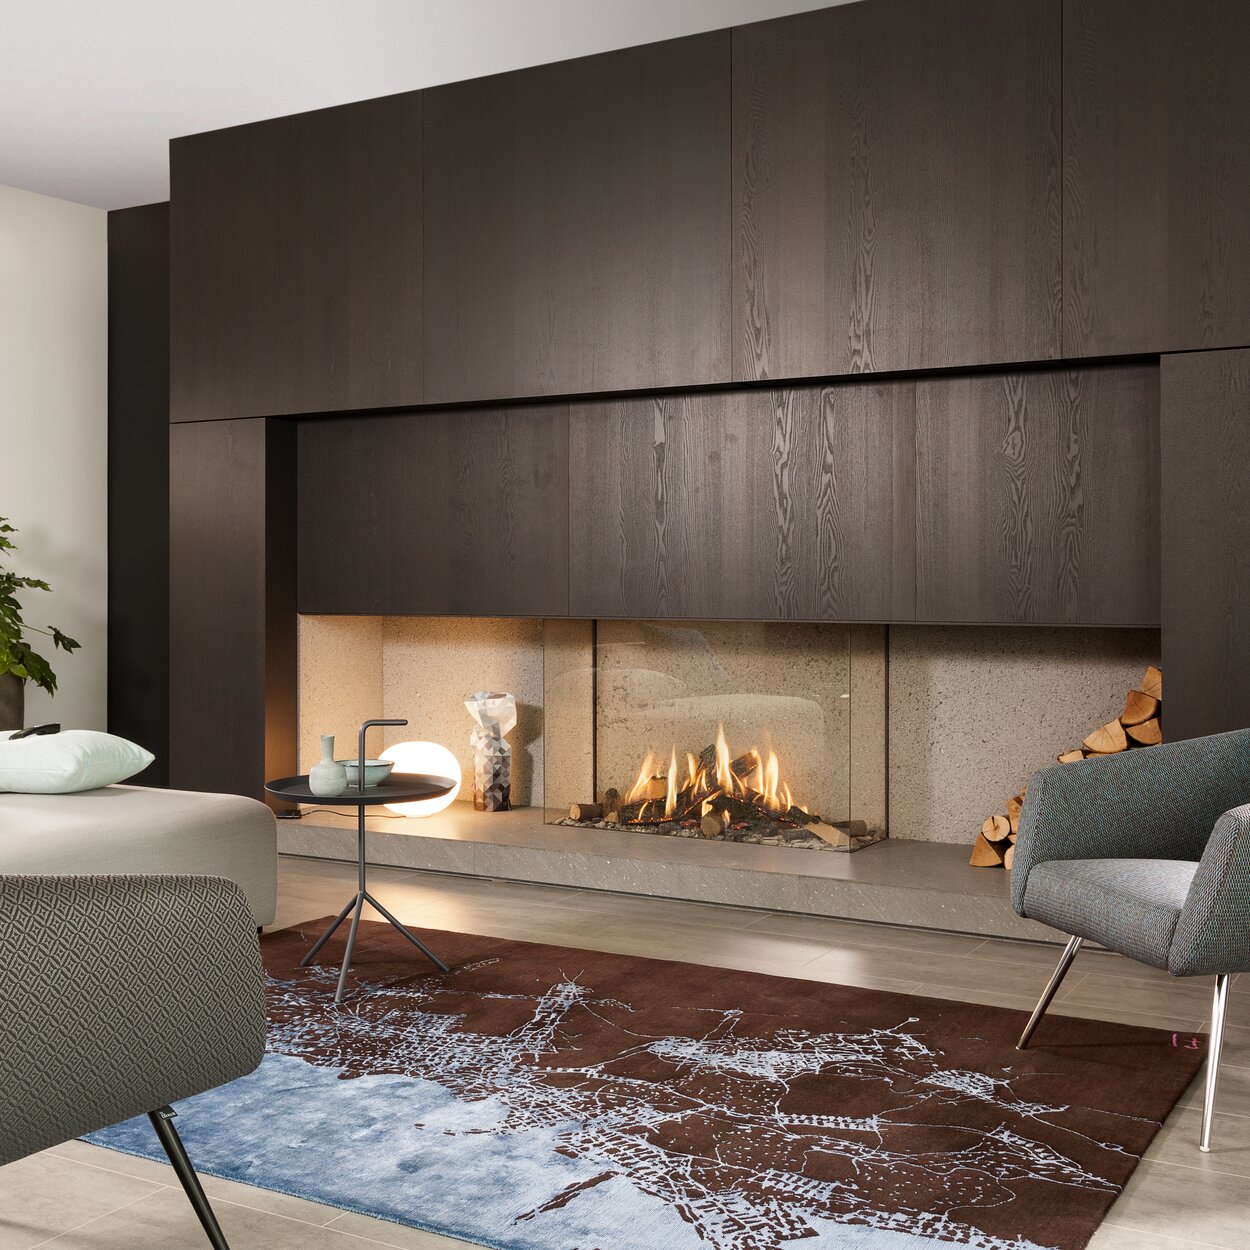 Gas-Kamin GP115/75S dreiseitig verglast an moderner dunkler Holzwand eingebaut im Wohnzimmer mit Sofa und Sessel